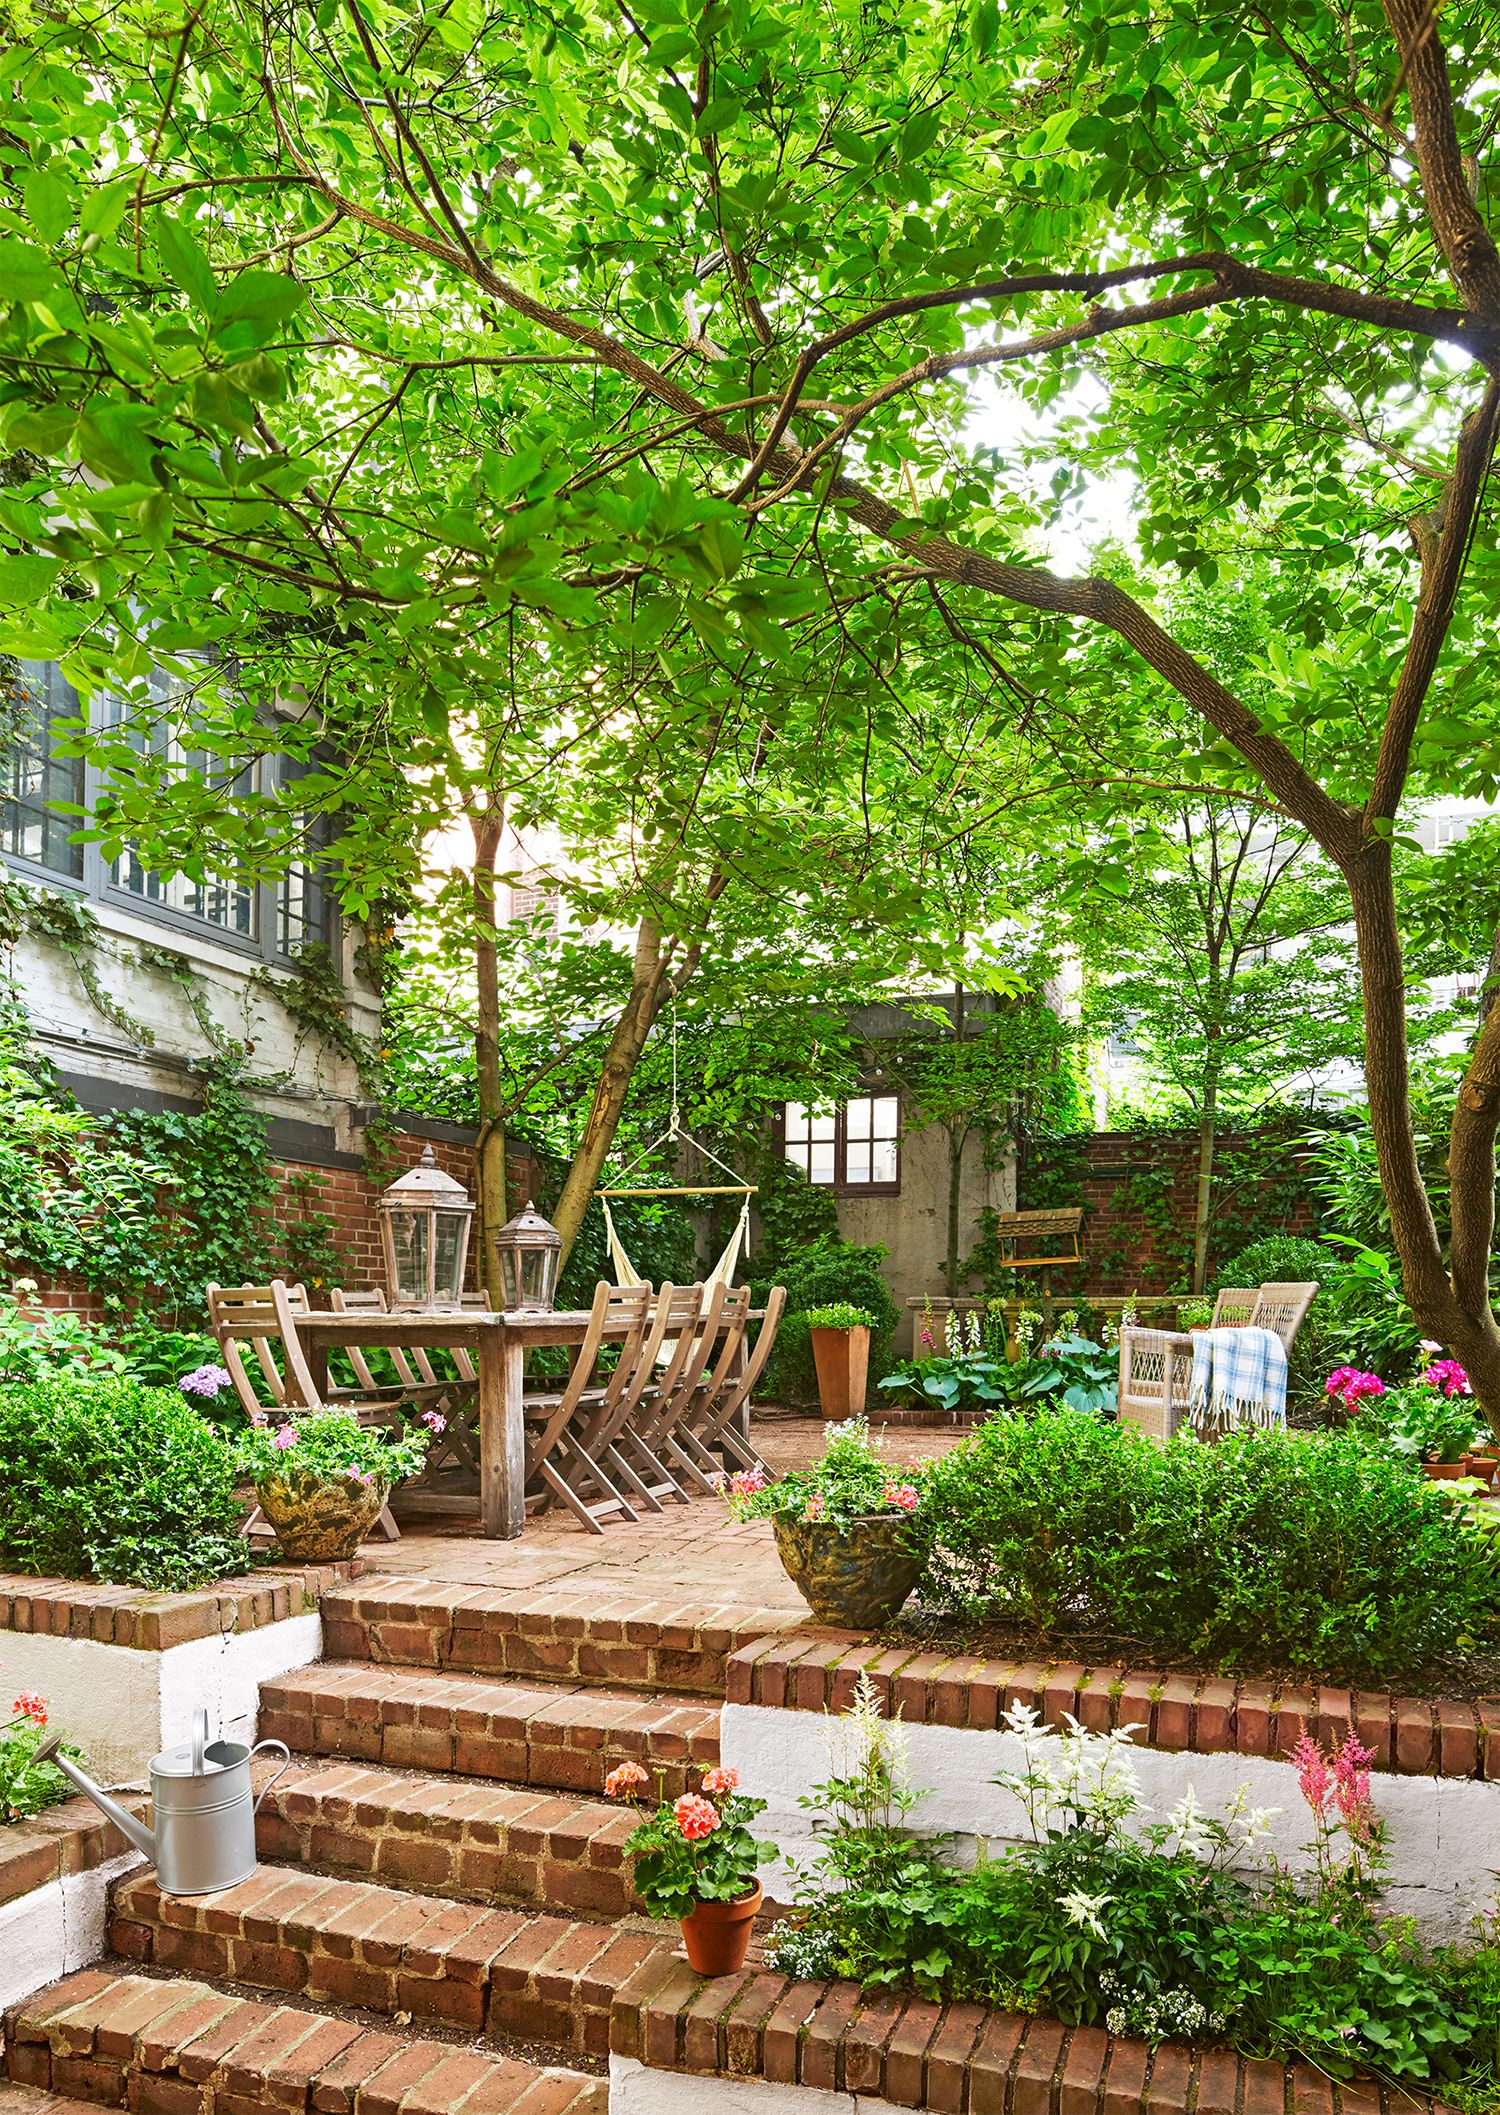 18 Creative Small Garden Ideas Indoor And Outdoor Garden Designs For Small Spaces